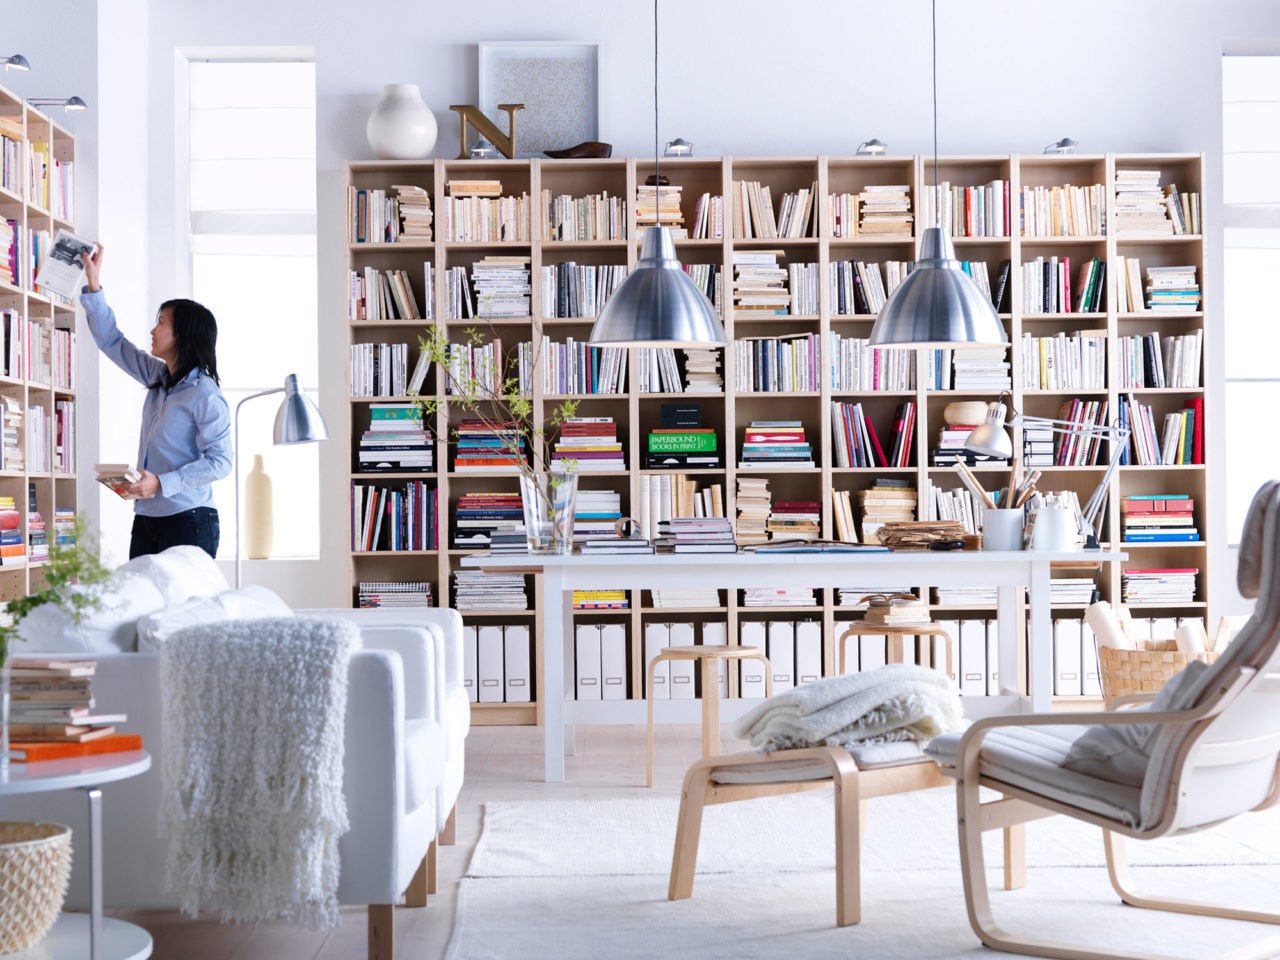 Helles Wohnzimmer mit Bücherregalen über die gesamte Wandlänge. Mehrere Sessel, darunter POÄNG mit Fußhocker.